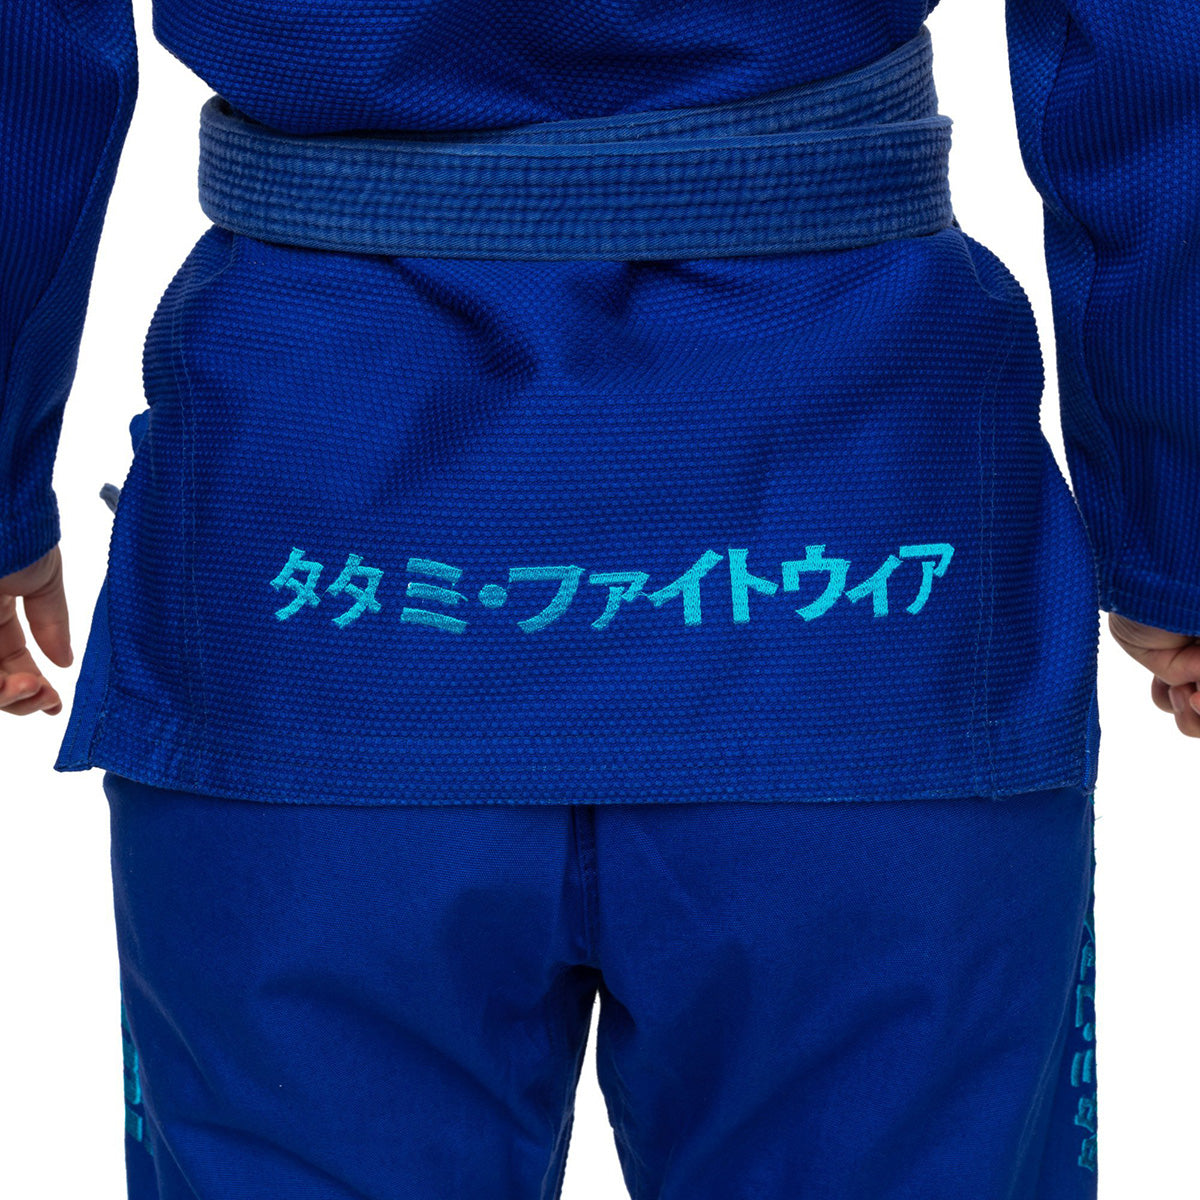 Tatami Fightwear Women's Estilo Black Label BJJ Gi - Blue/Blue Tatami Fightwear